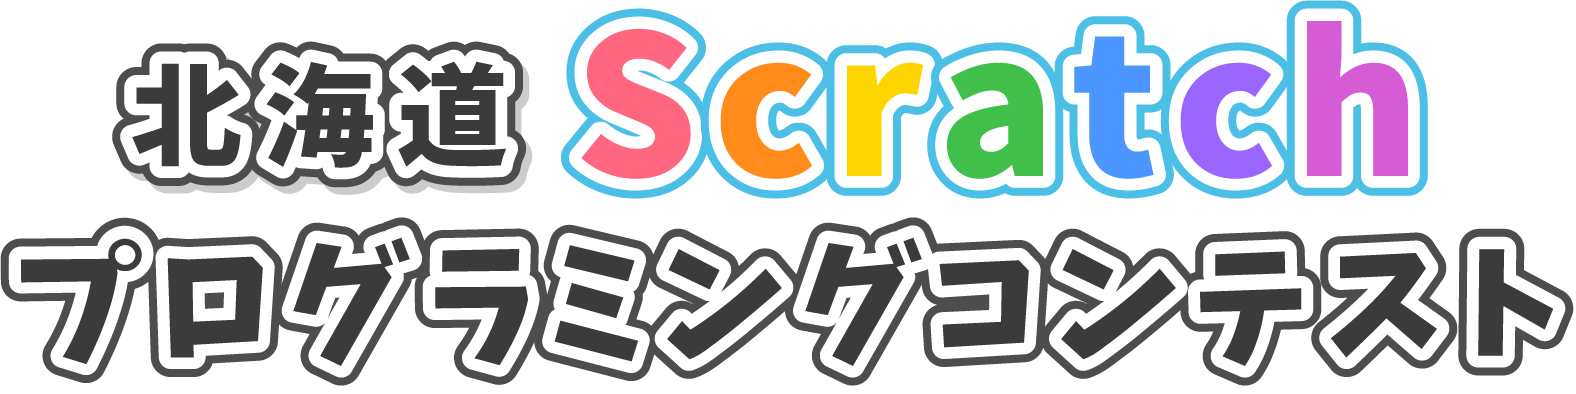 北海道Scratchプログラミングコンテスト